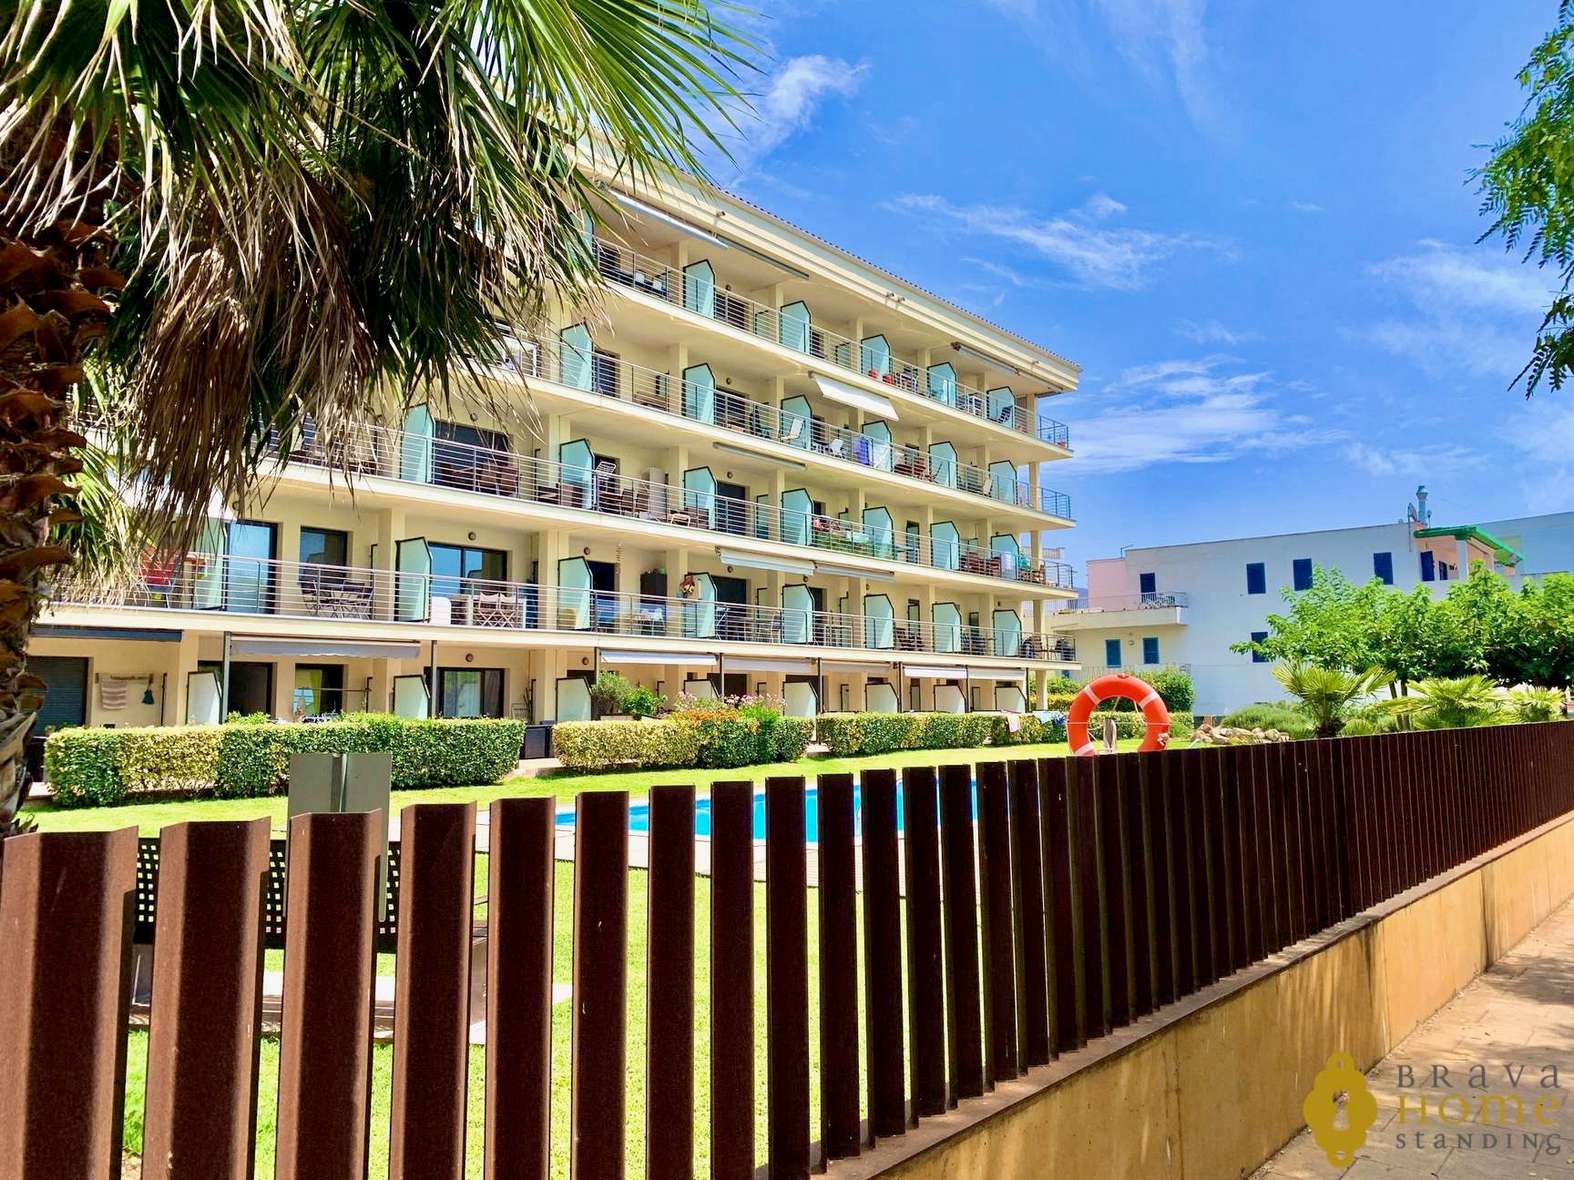 Espléndido apartamento en 1ª línea de mar con piscina en venta en Rosas - Salatar